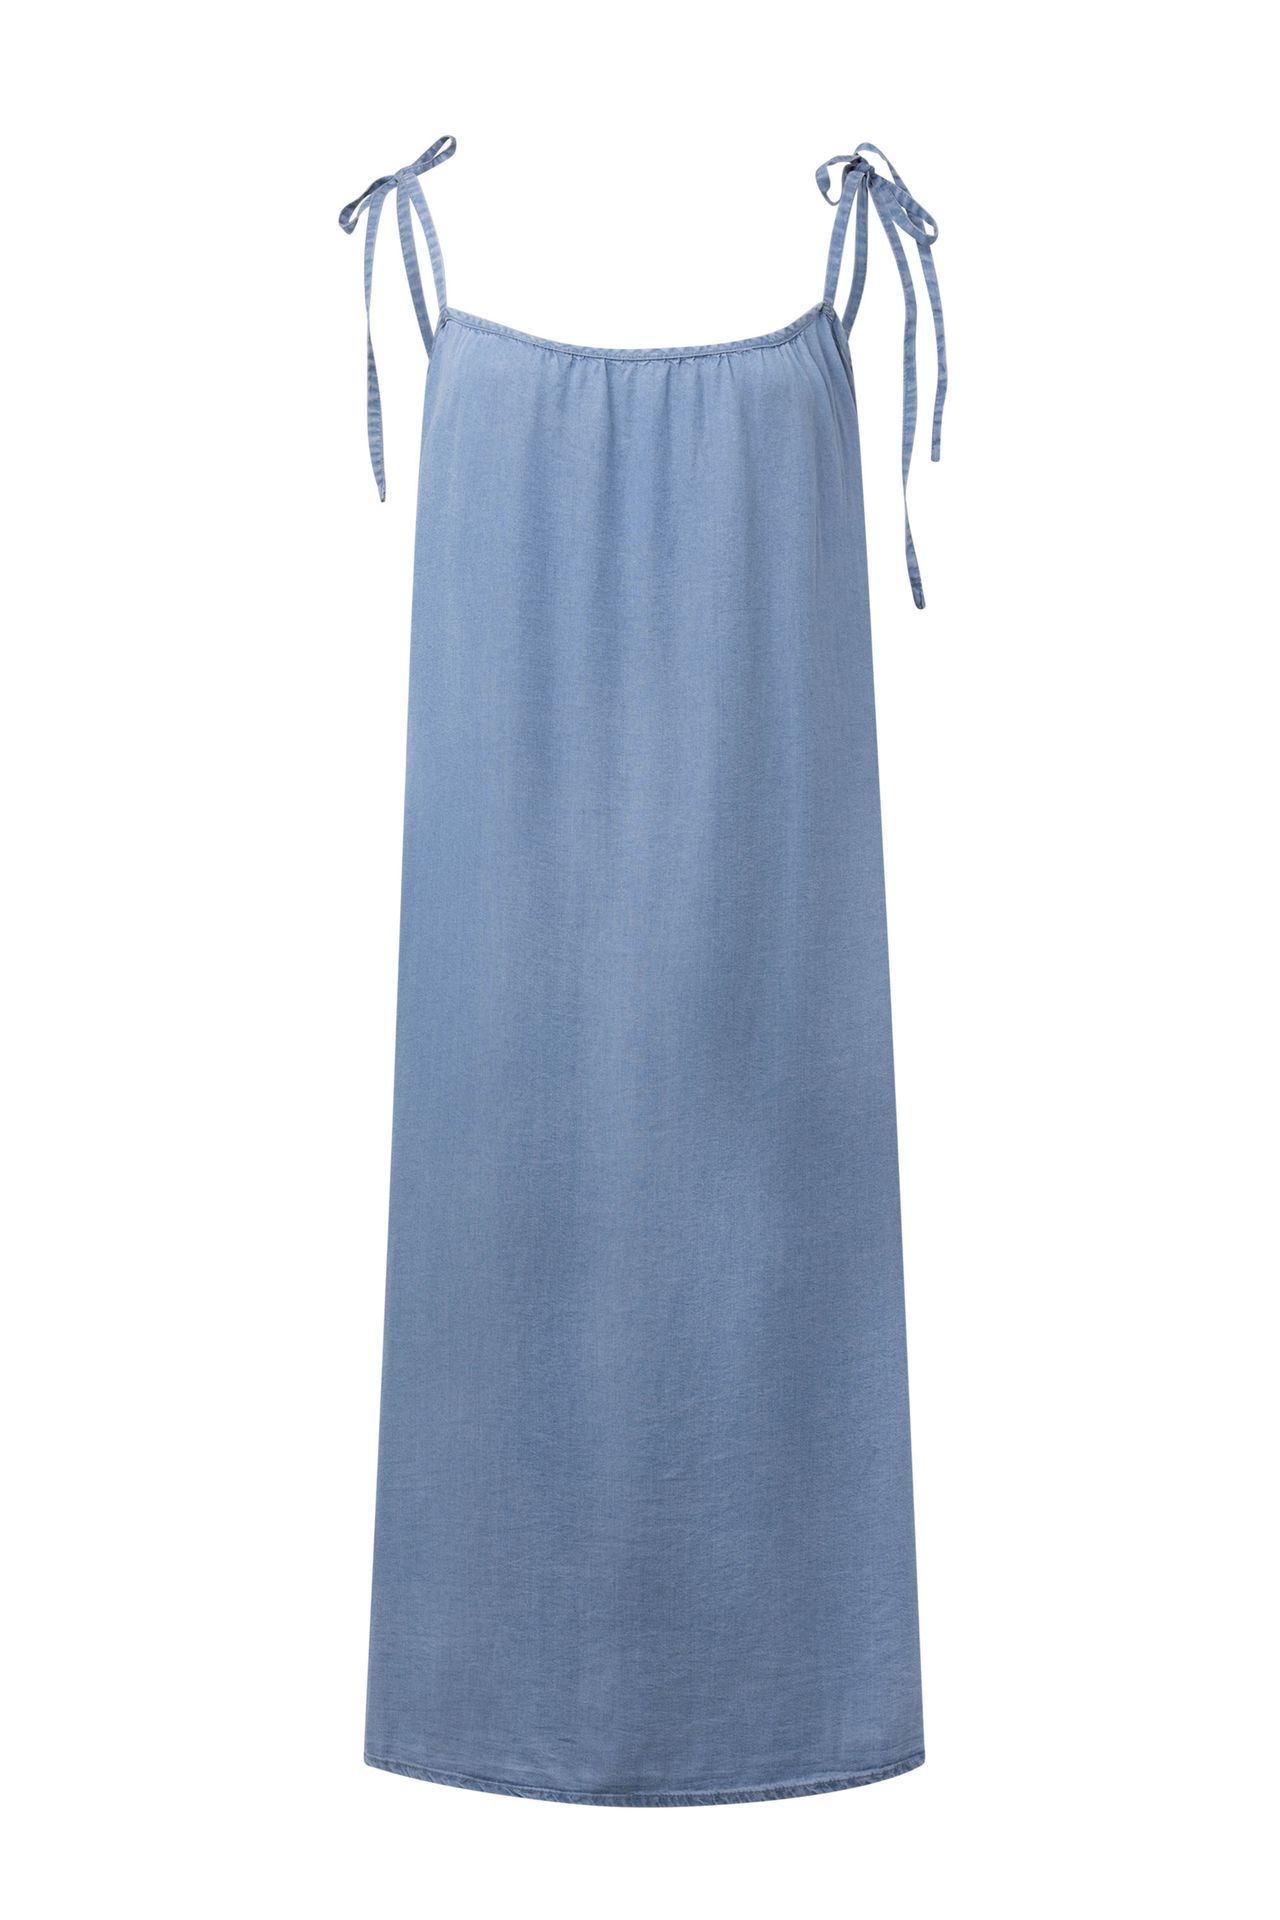  Mini jurk meerkleurig jeans/blue 214717-471-48